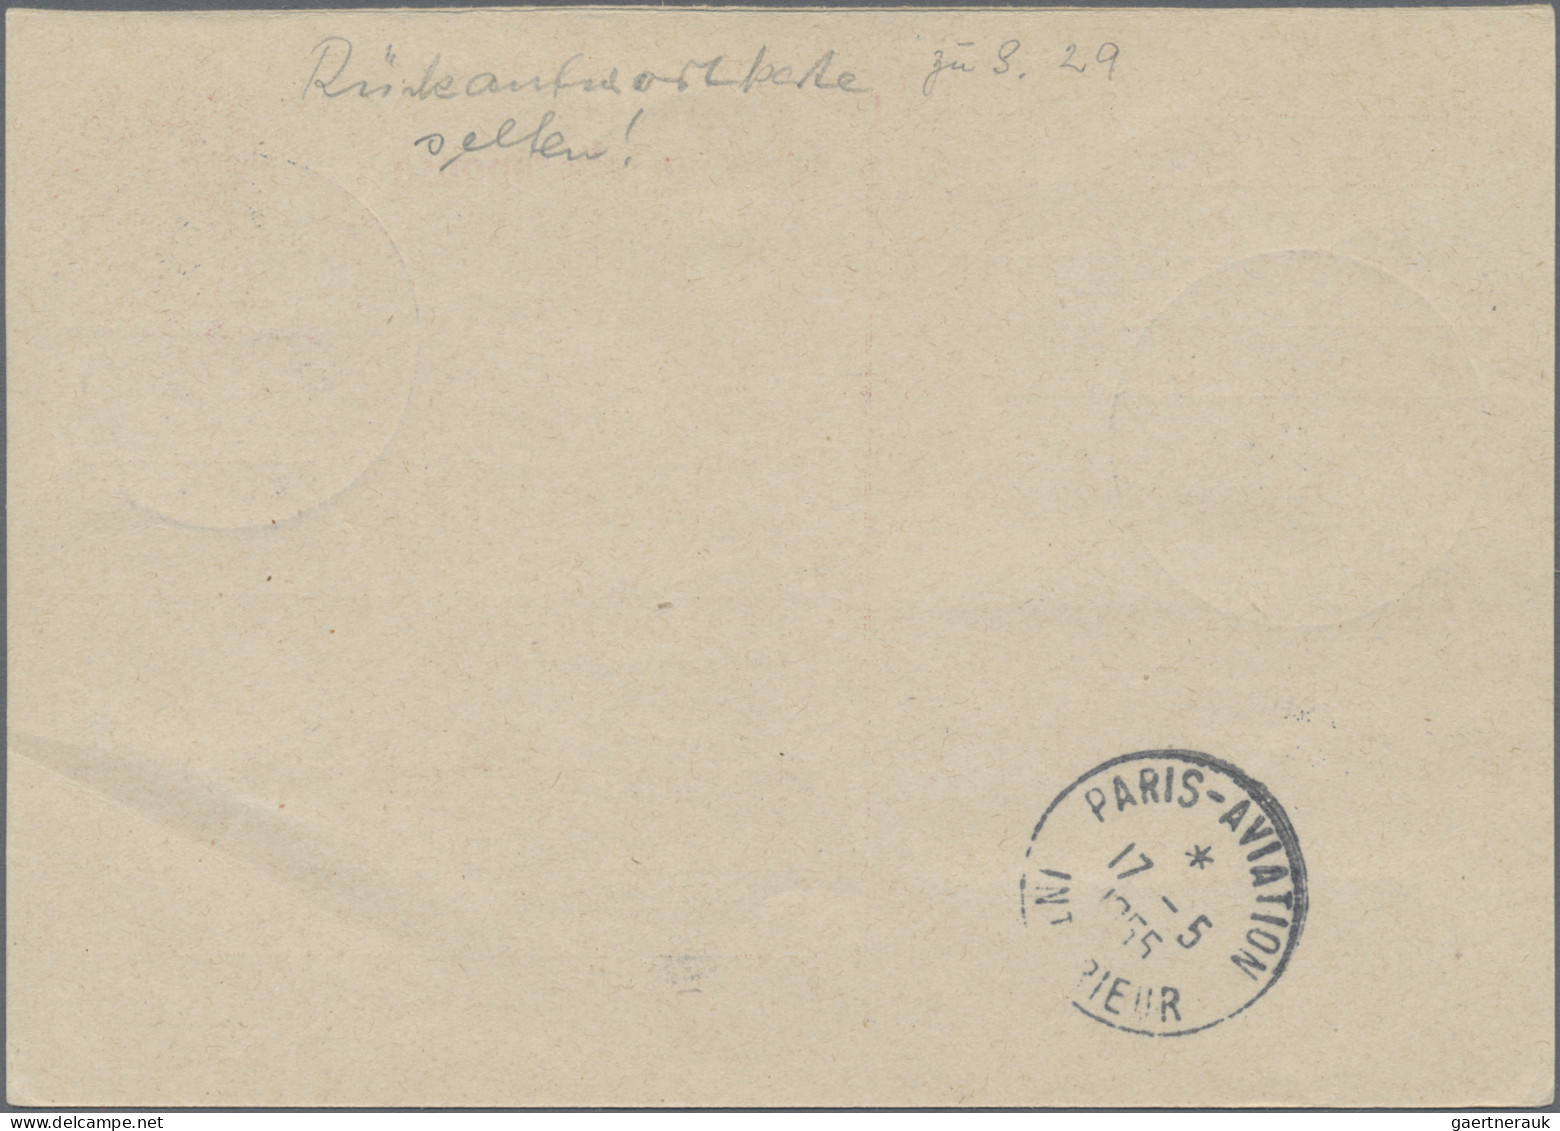 Saarland (1957/59) - OPD Saarbrücken - Ganzsachen: 1955/1958, Drei Ganzsachenkar - Briefe U. Dokumente